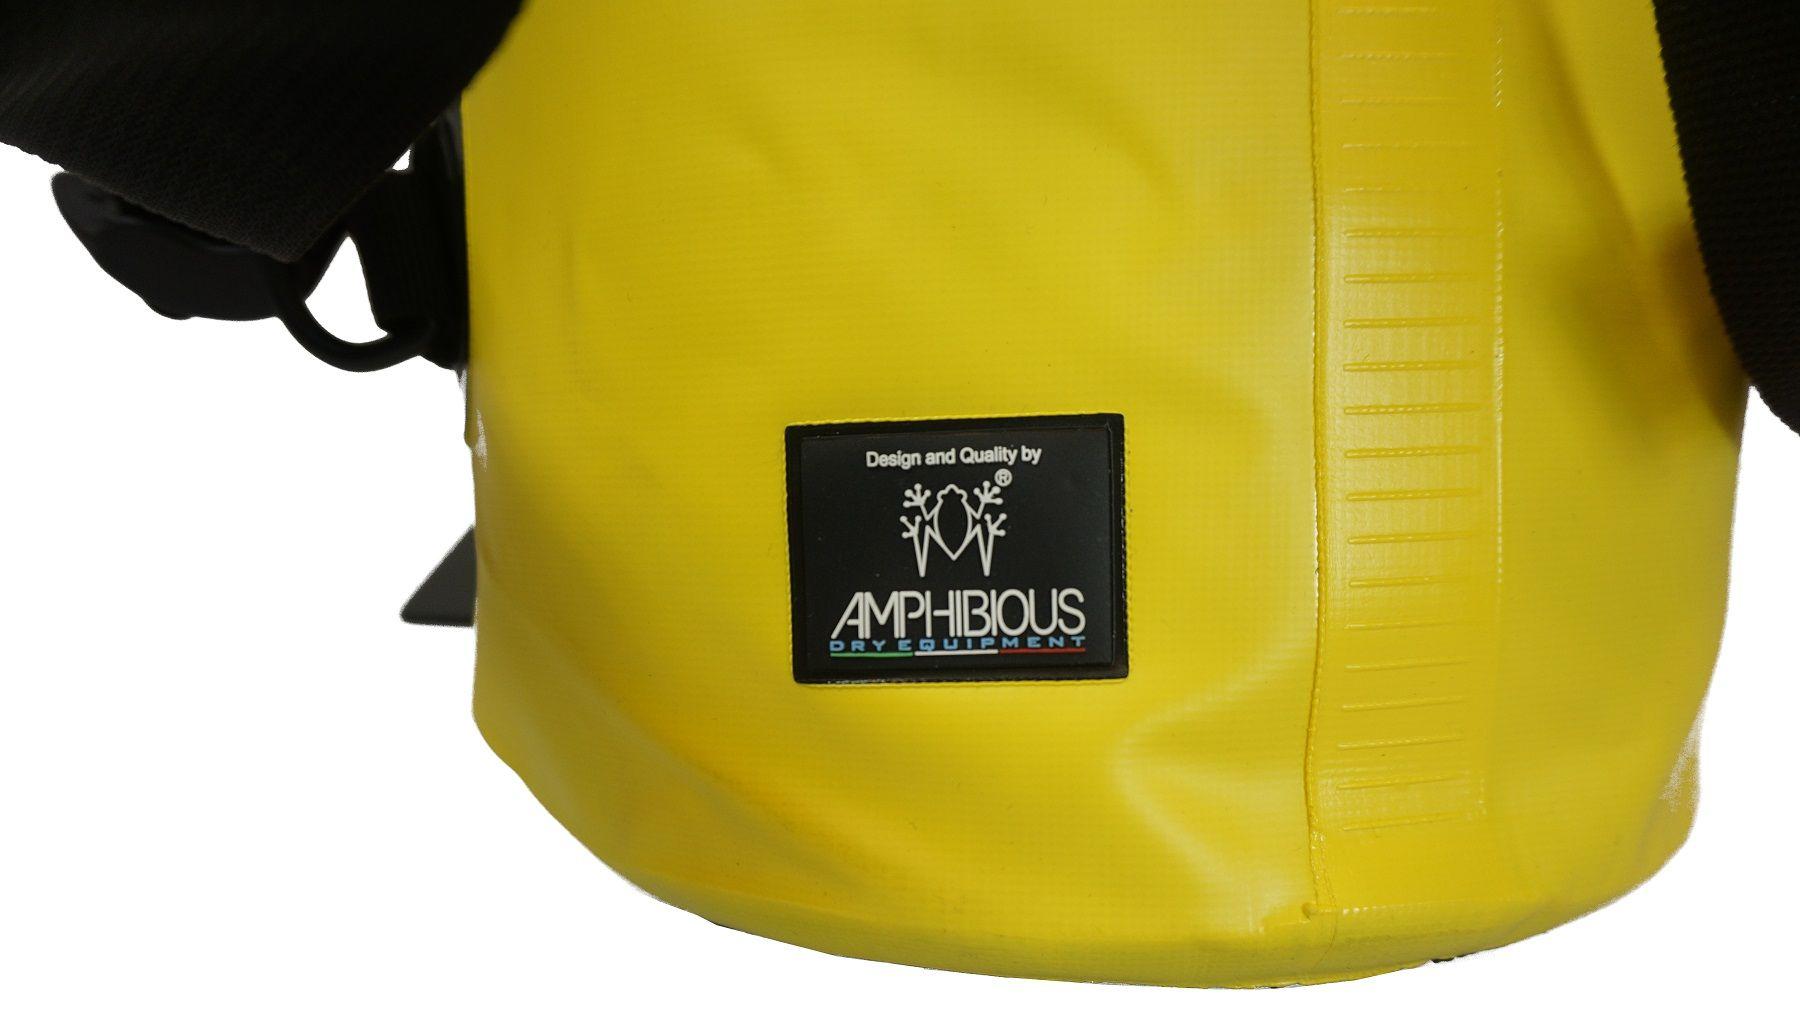 Plecak Amphibious Quota Wodoszczelny 30l Żółty Zsa-2030.04